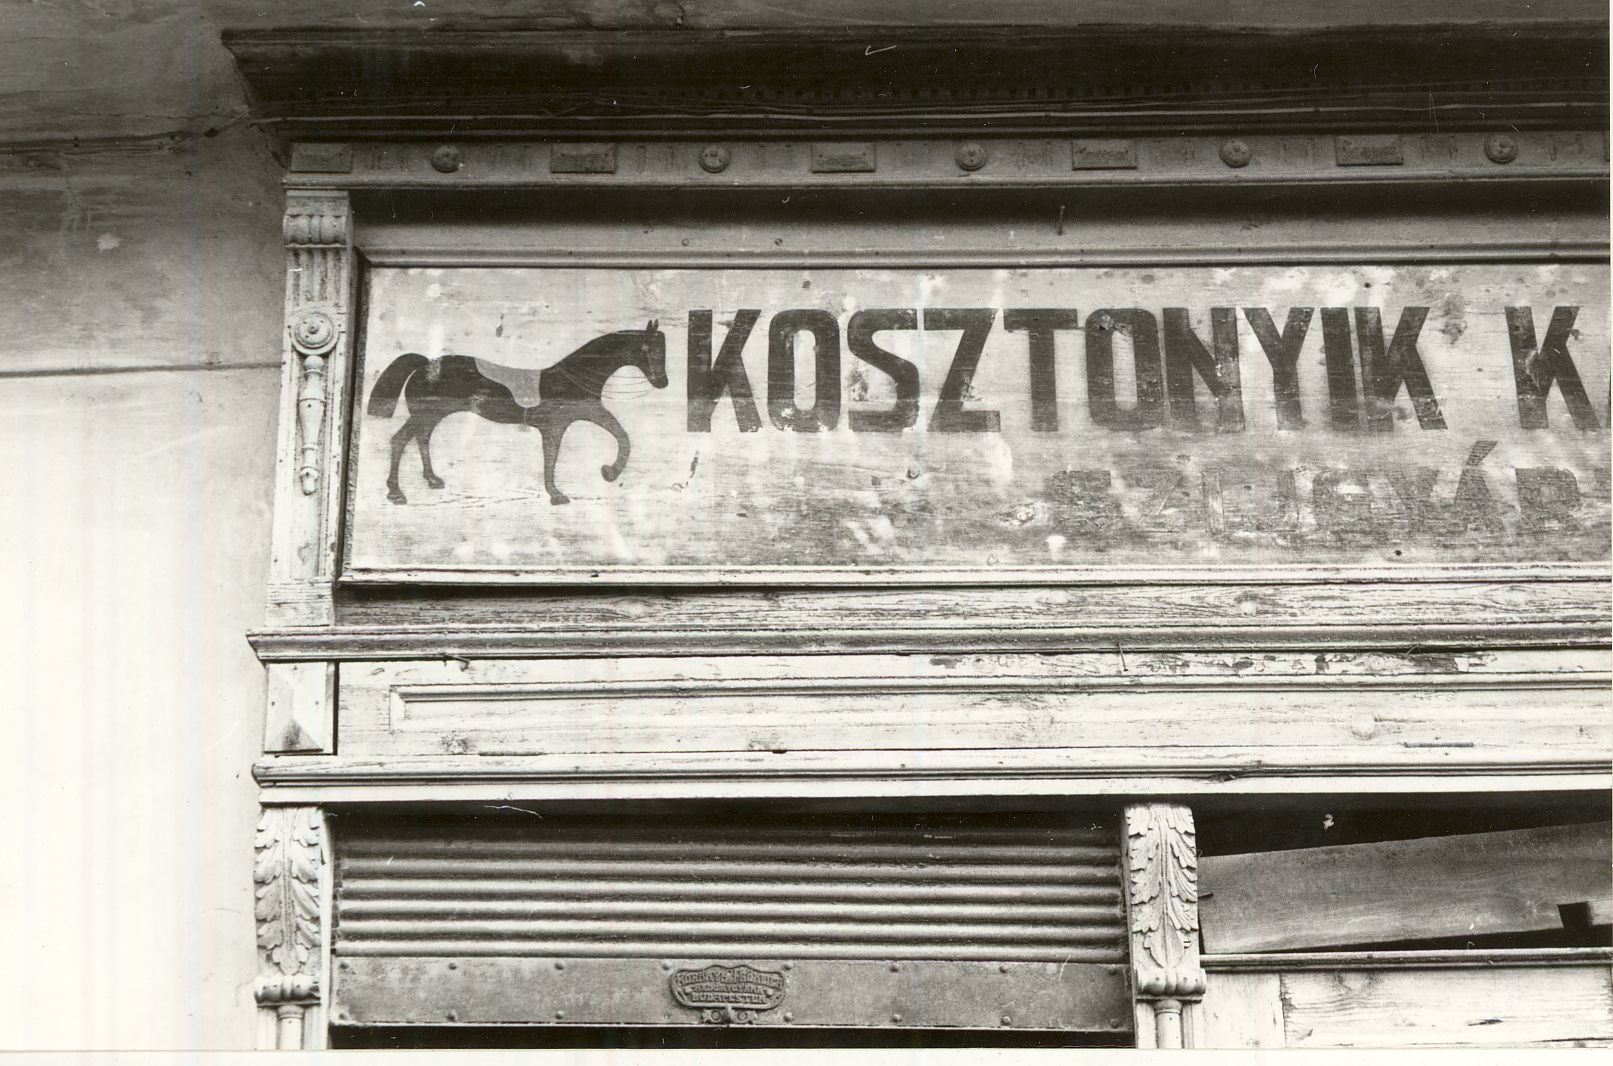 Kosztonyik Kálmán üzlete Dunaföldvár 1978. (Magyar Kereskedelmi és Vendéglátóipari Múzeum CC BY-NC-ND)